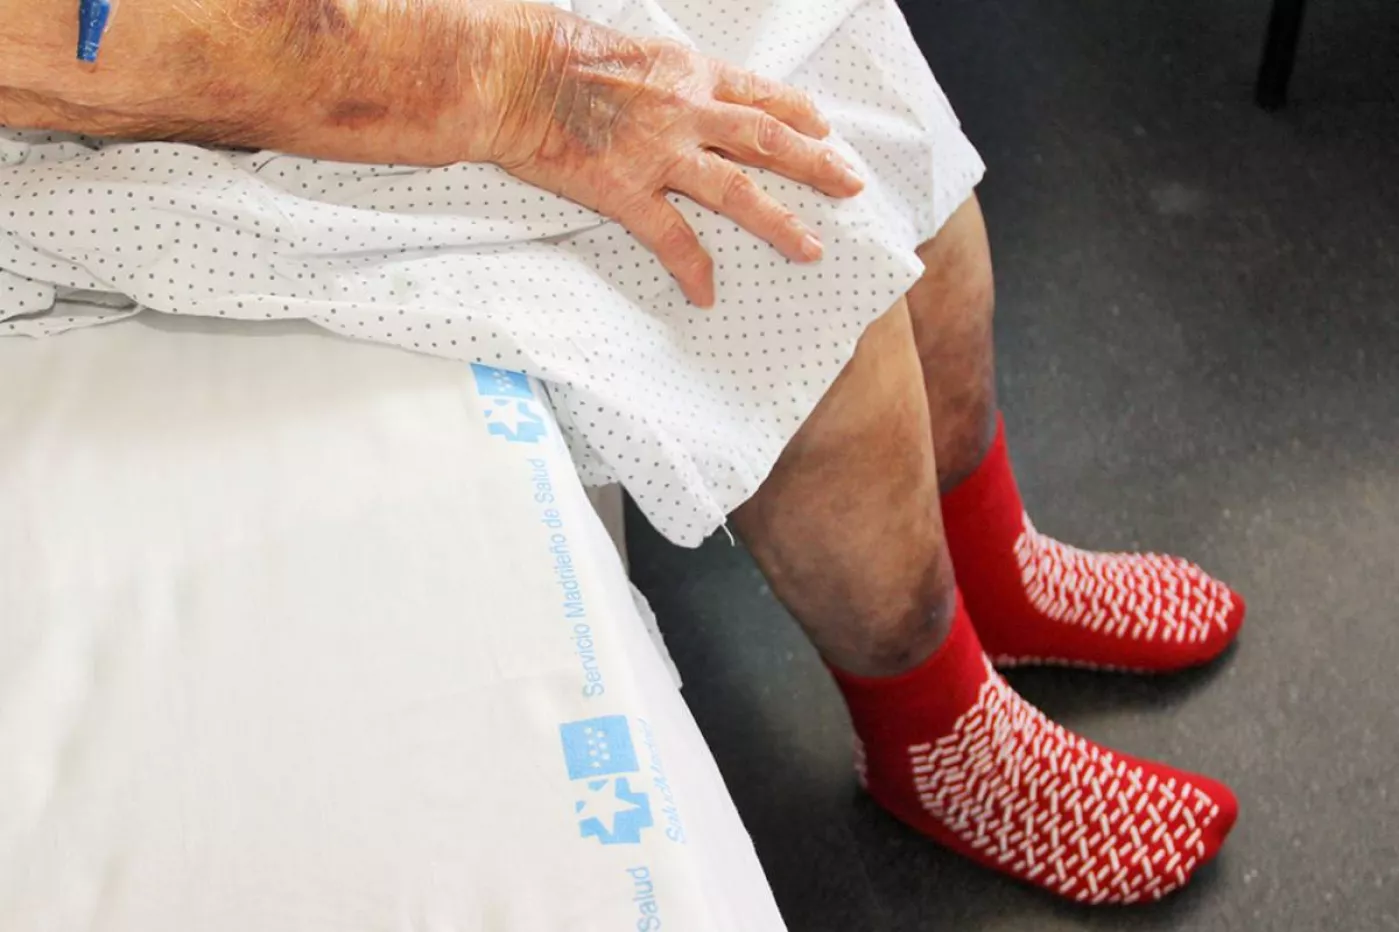 El Hospital Clínico San Carlos estudia utilizar calcetines antideslizantes para evitar caídas entre sus pacientes.